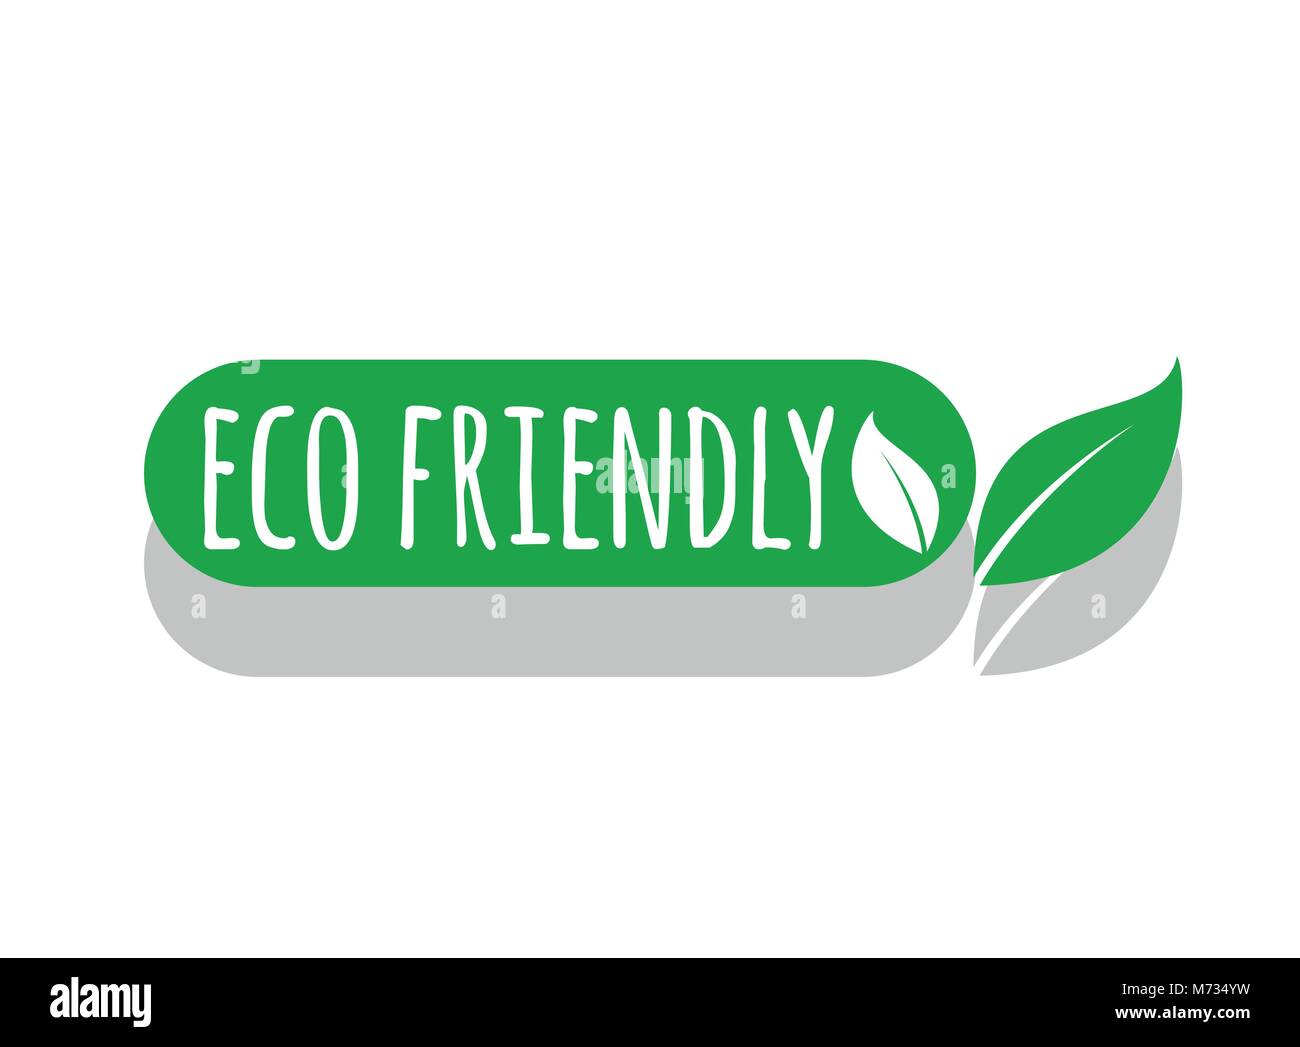 eco friendly vector logo Stock Vector